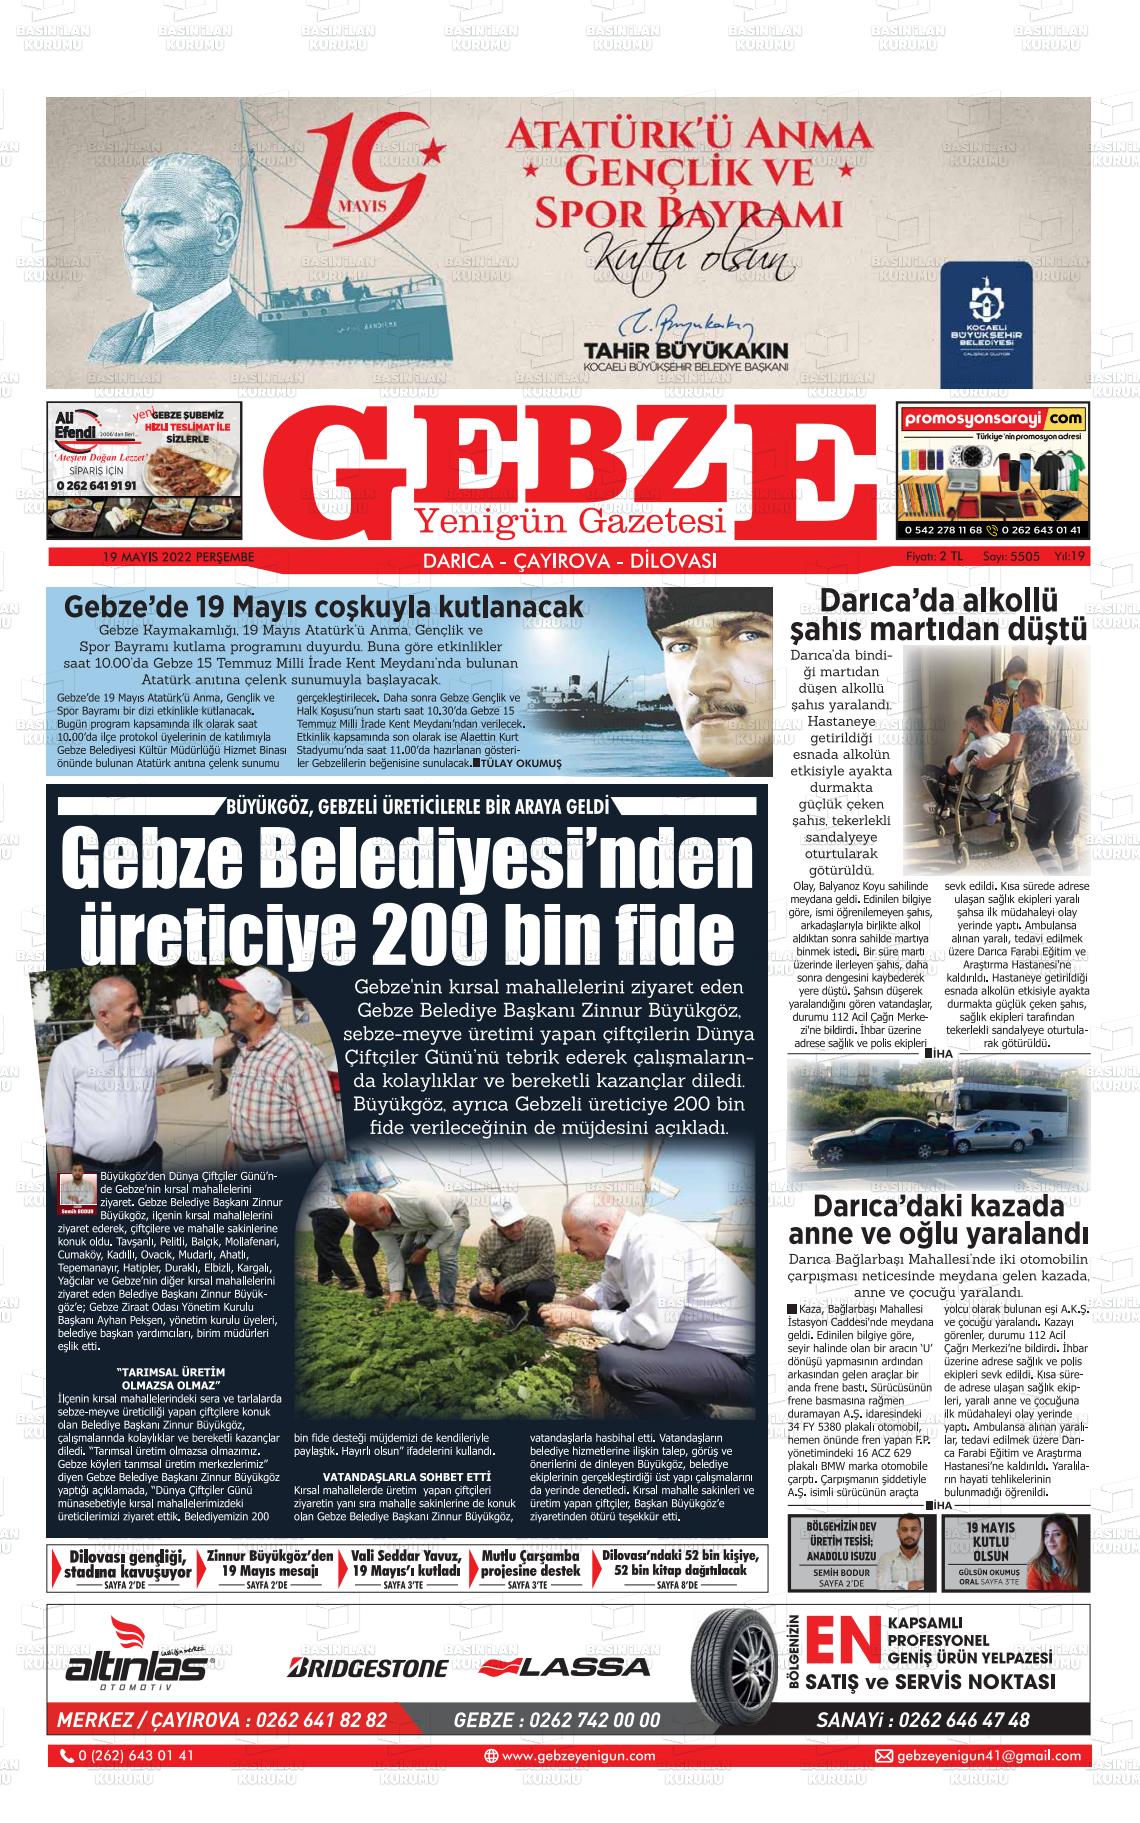 19 Mayıs 2022 Gebze Yenigün Gazete Manşeti